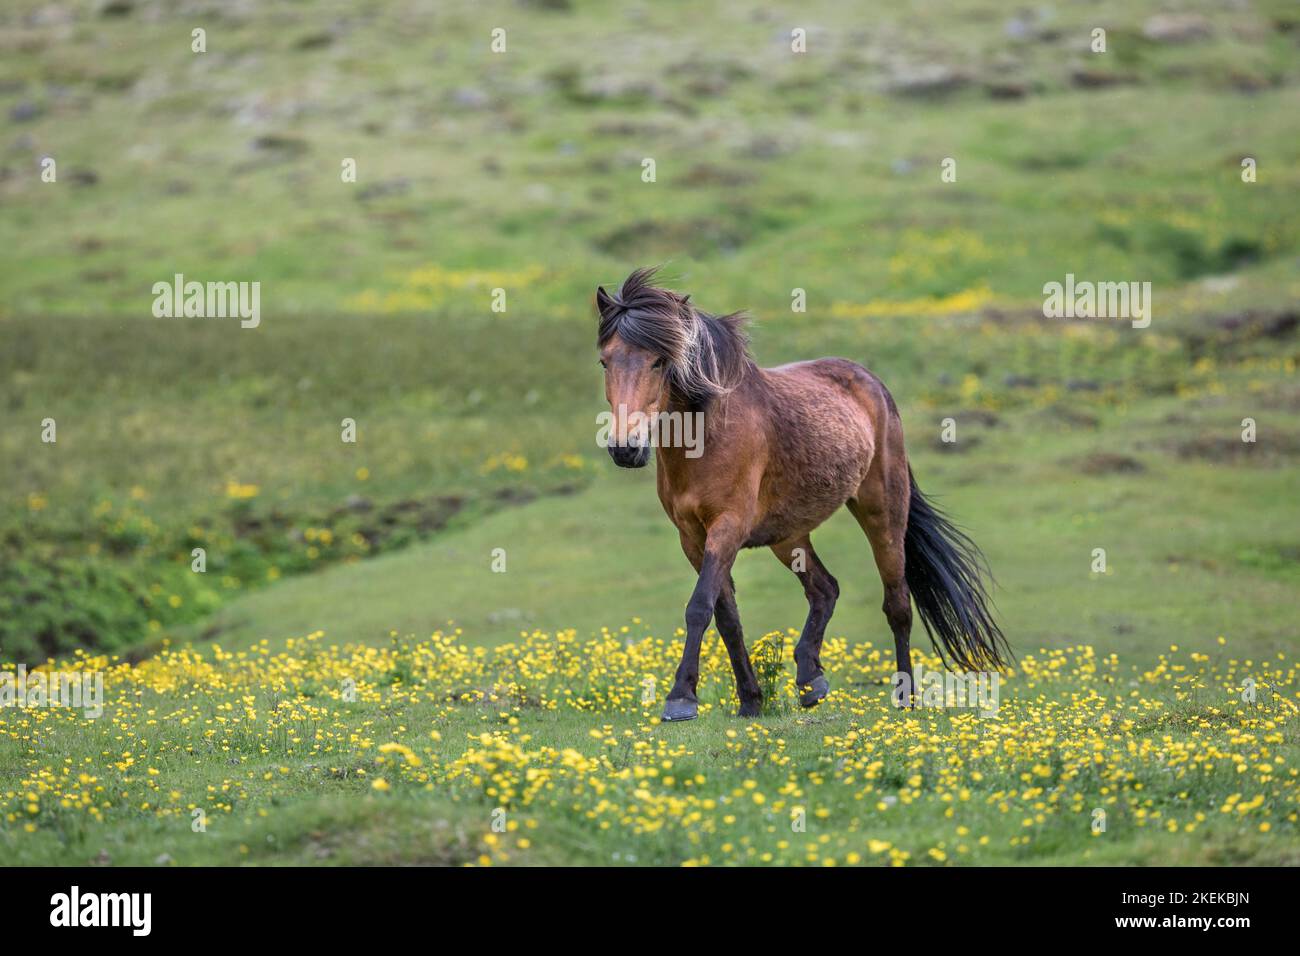 Iceland Horse; Summer Stock Photo